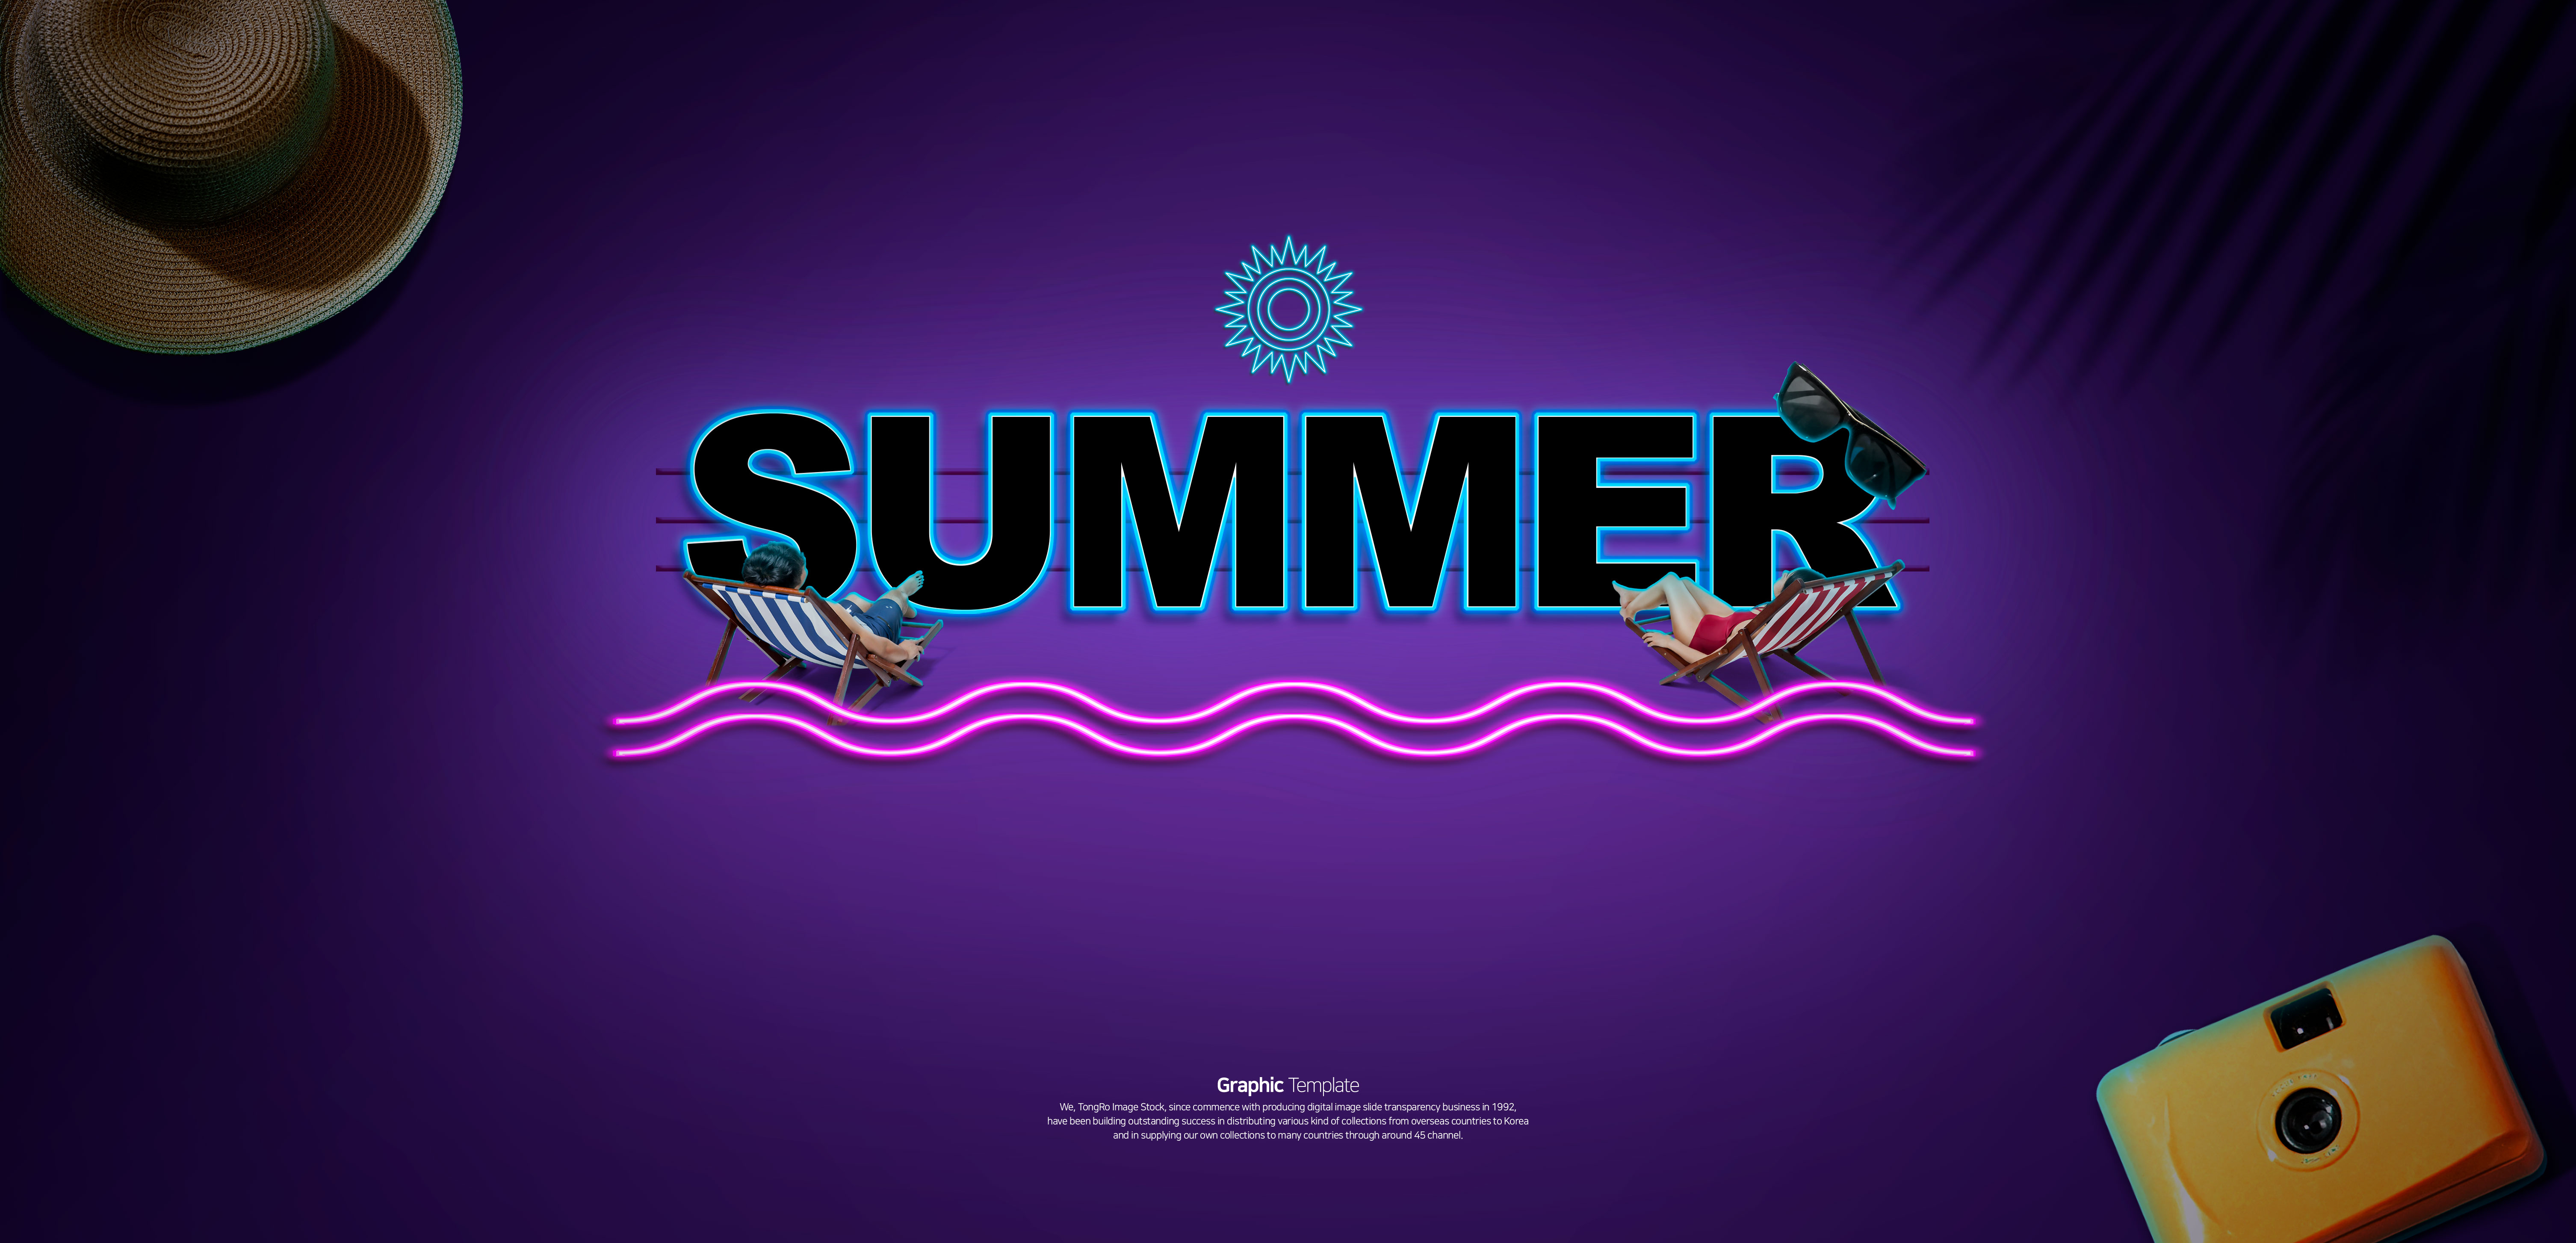 夏季主题旅行社网站促销广告Banner设计模板插图